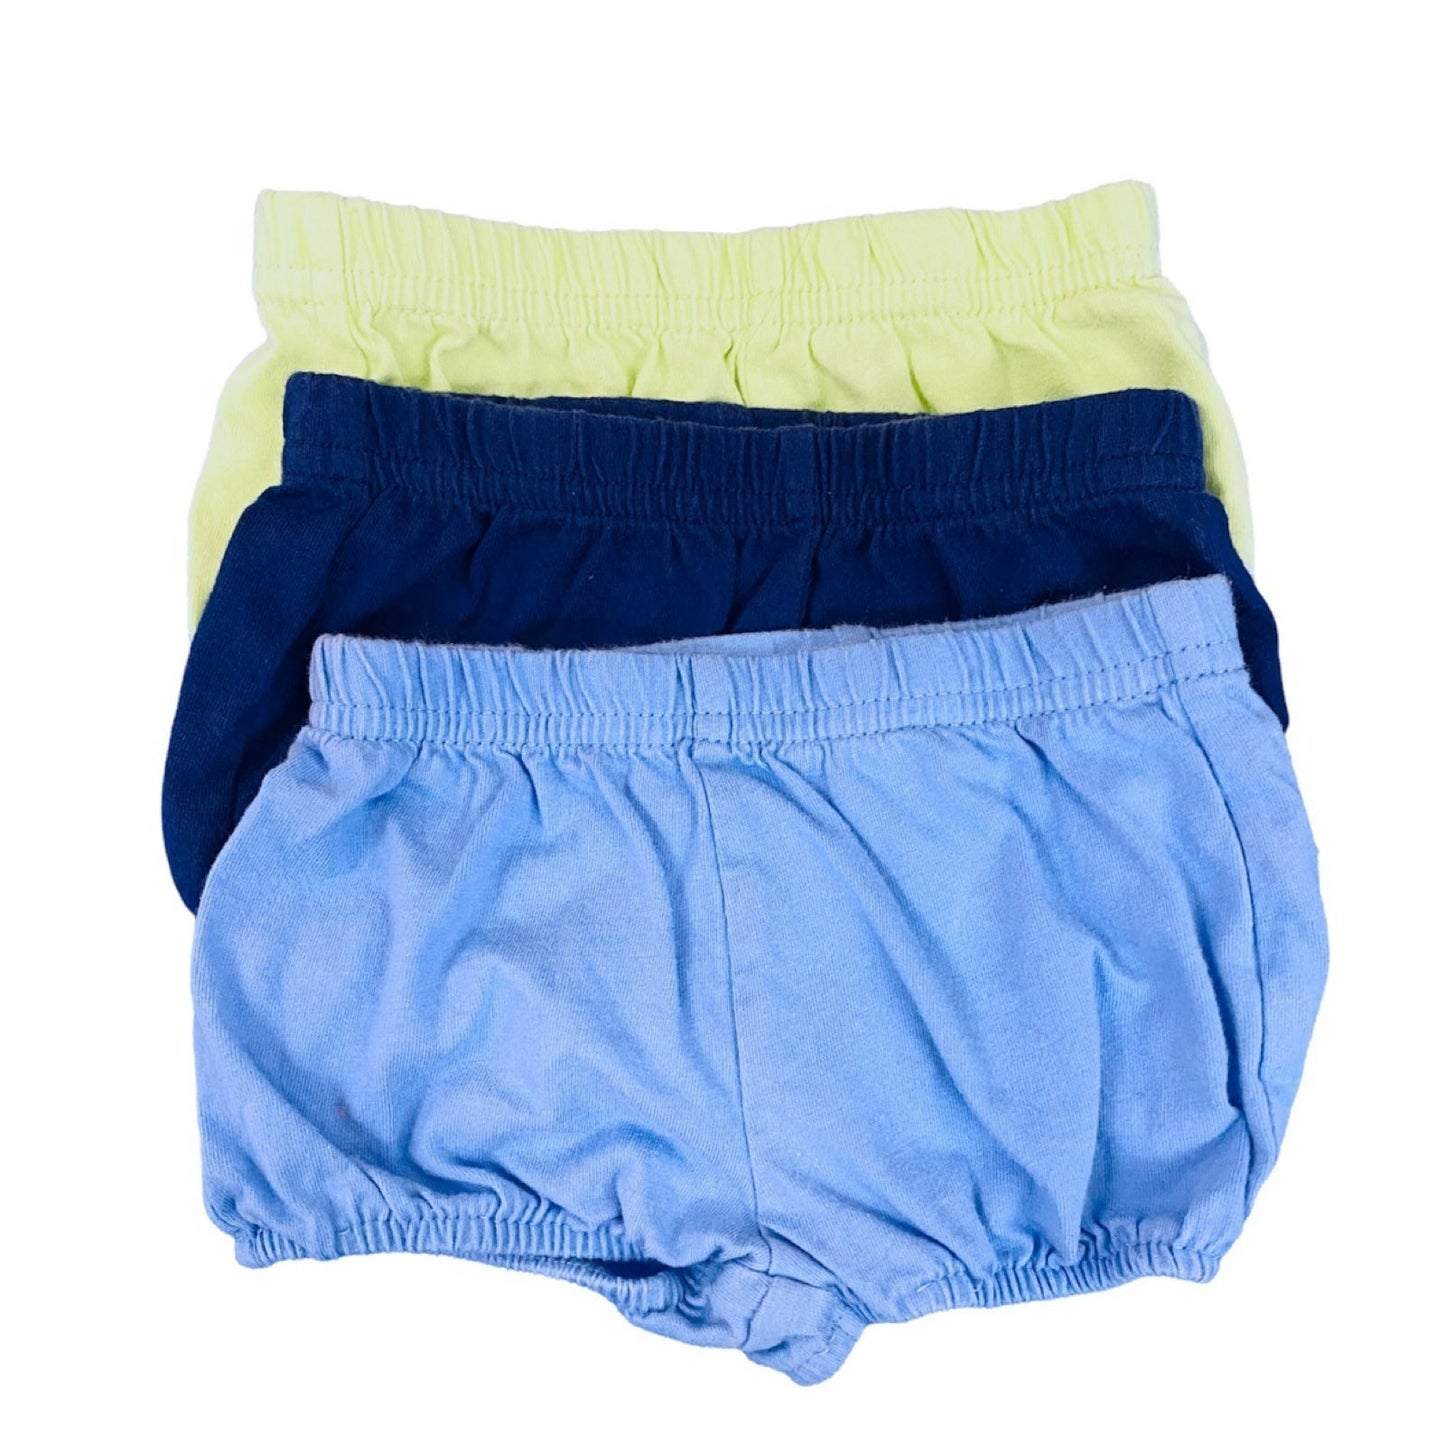 3 months diaper cover Shorts bundle